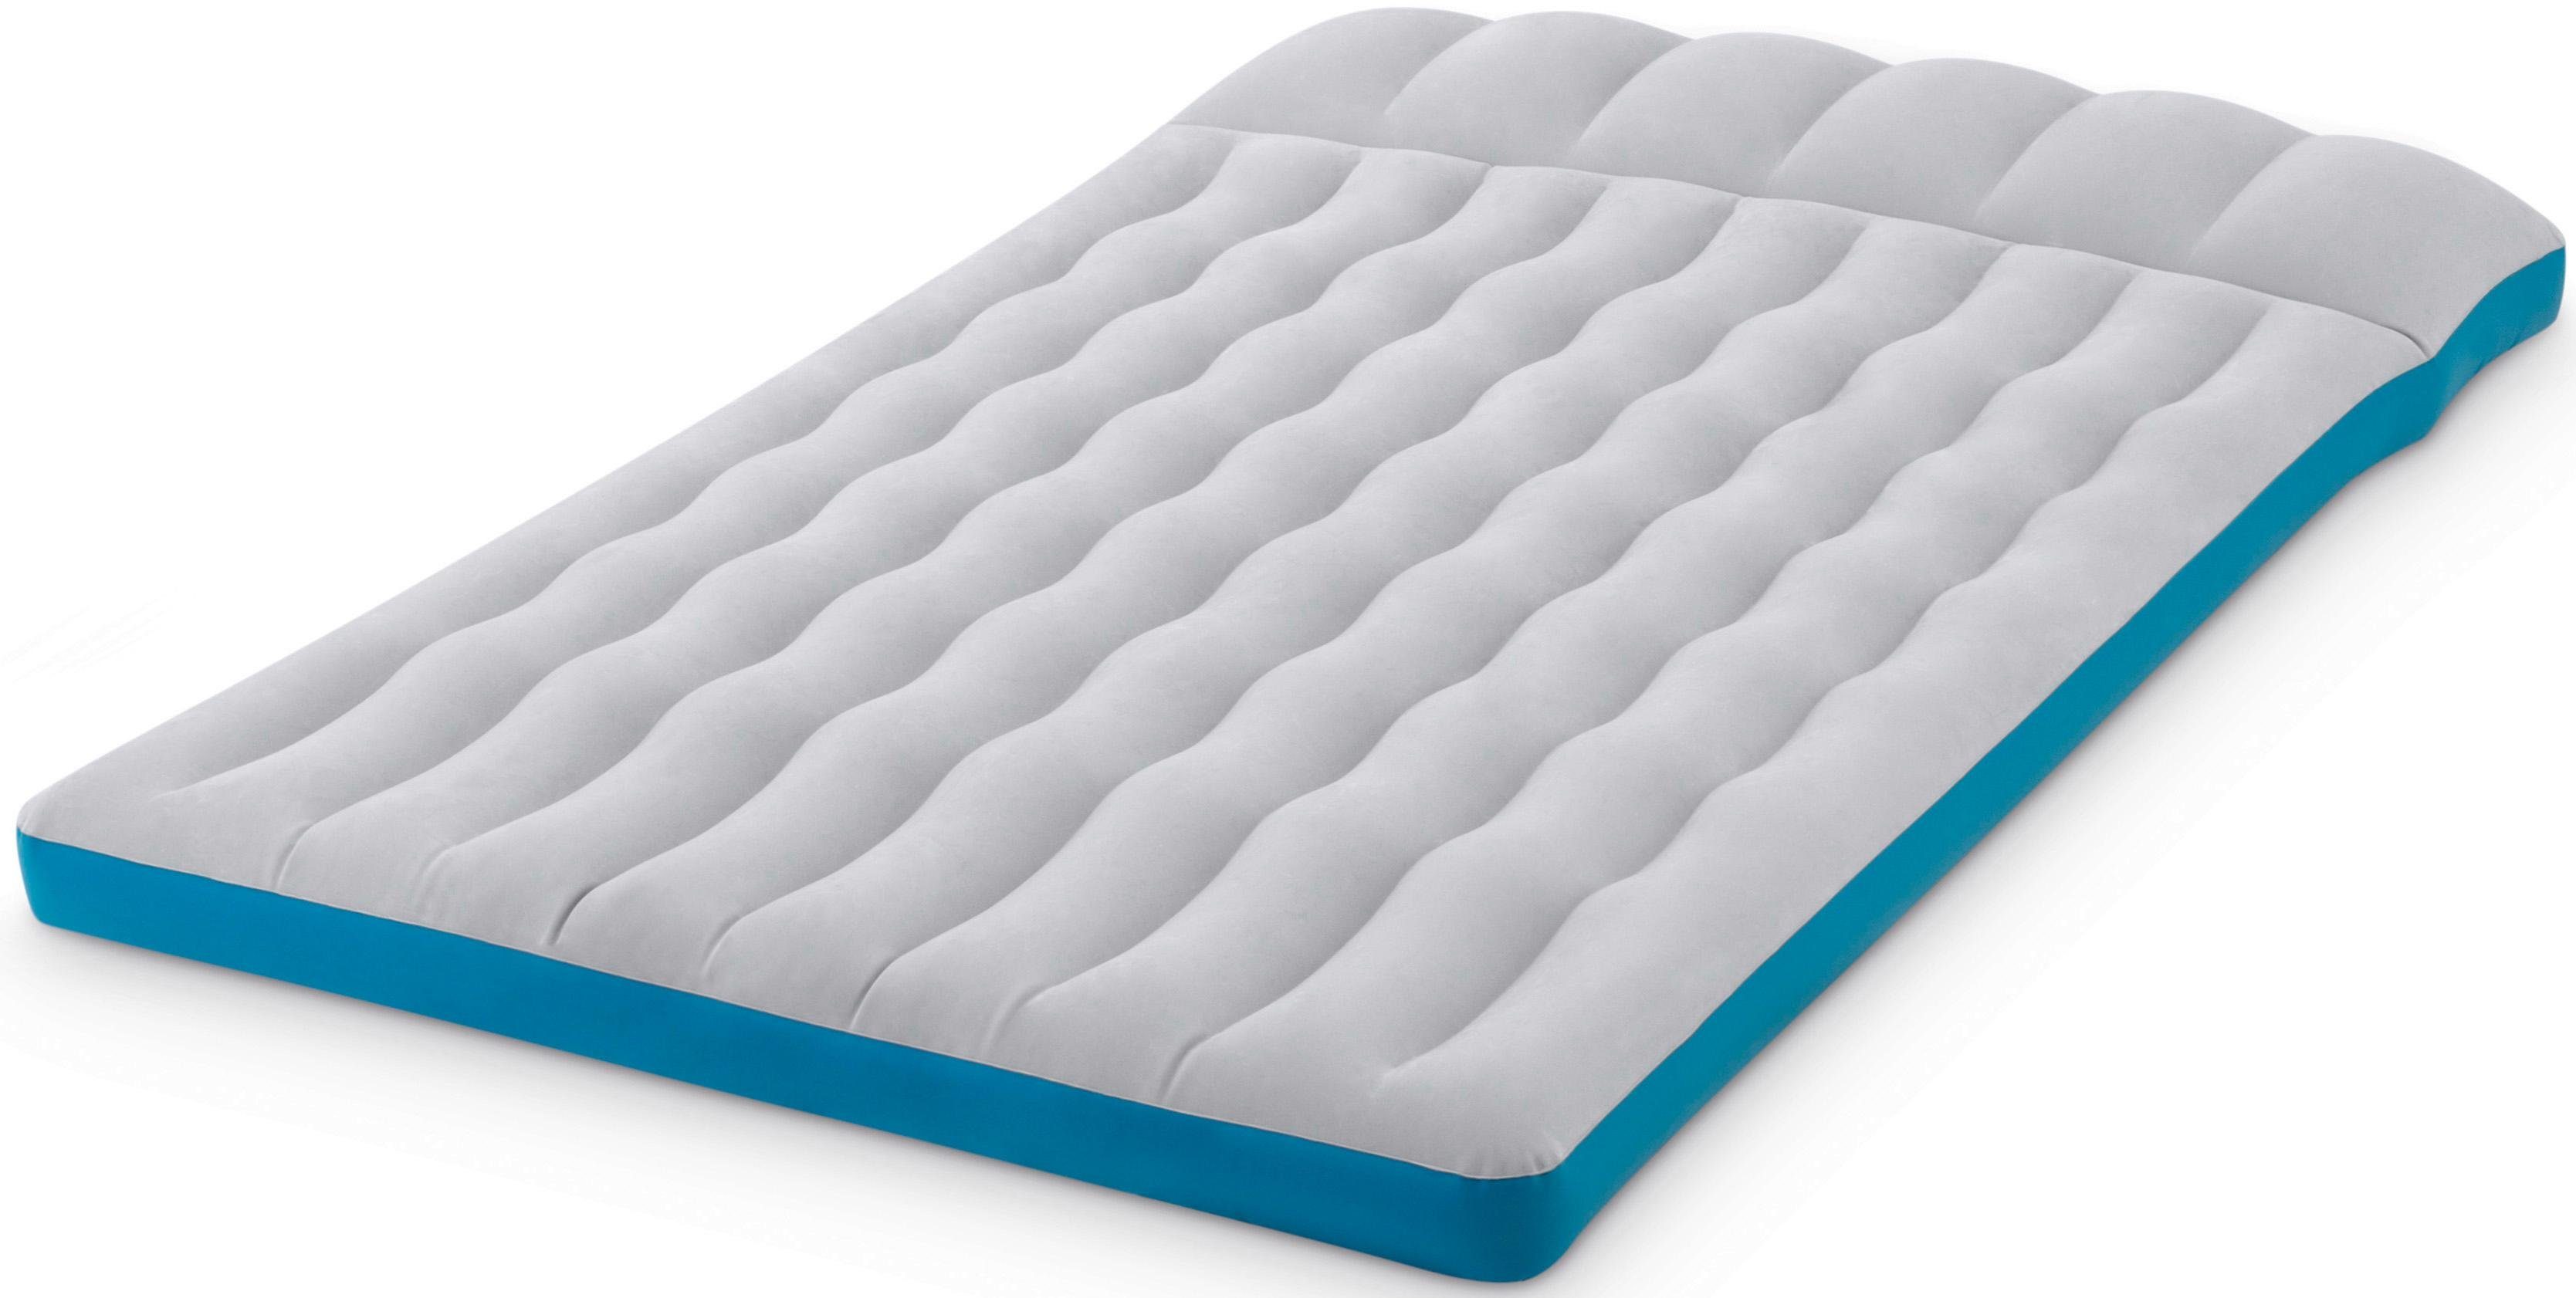 Intex Luftbett Camping Mat, Strapazierfähiges Vinylmaterial mit  Textiloberfläche online kaufen | OTTO